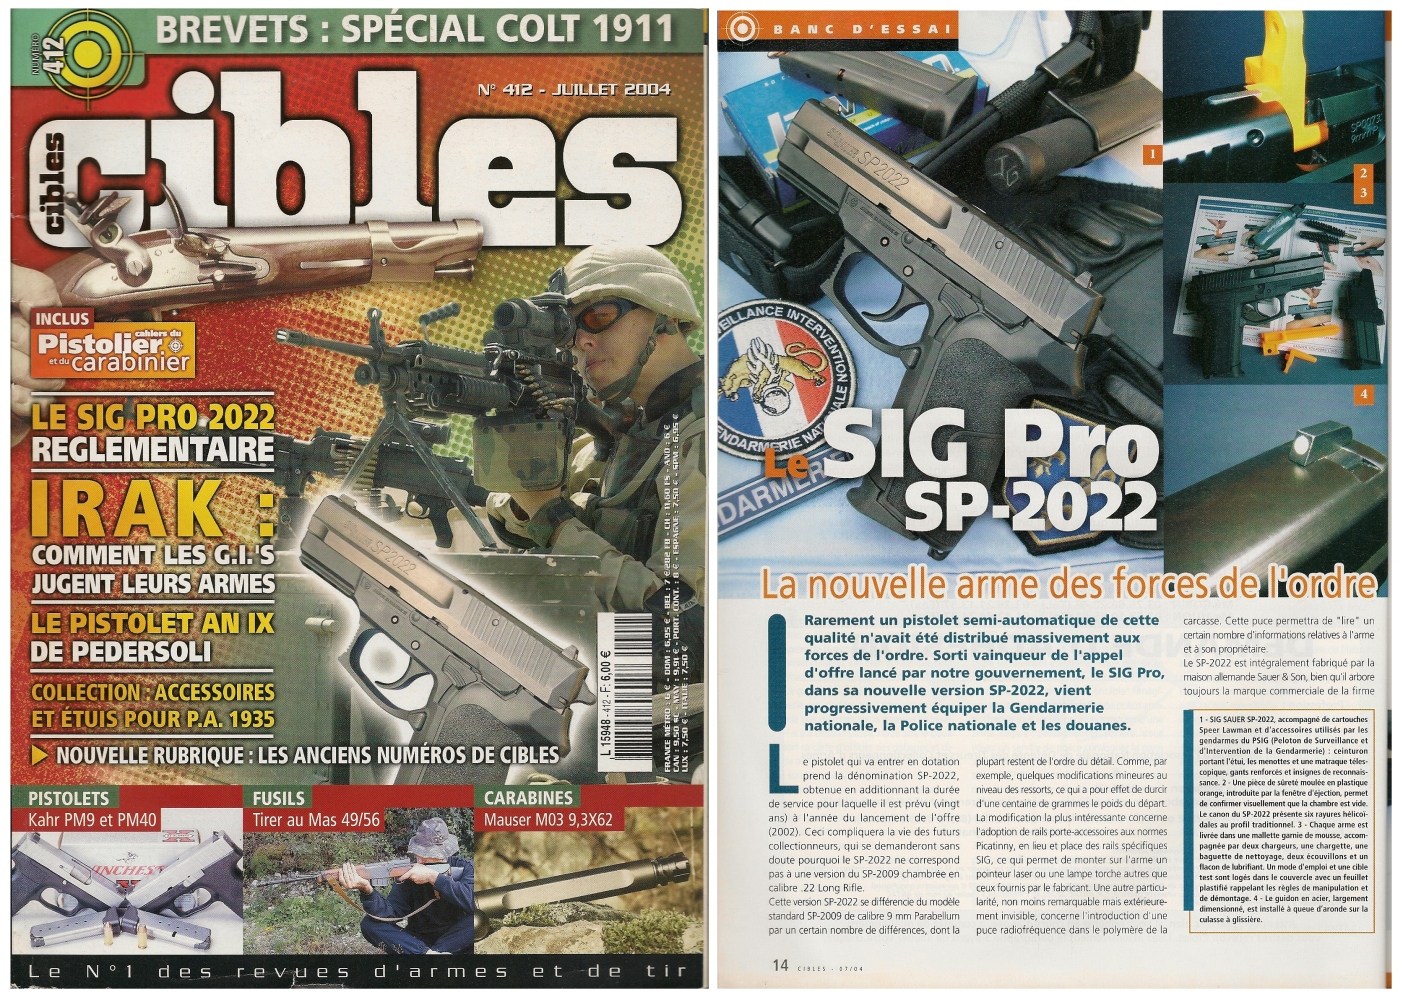 Le banc d’essai du SIG Pro SP-2022 a été publié sur 5 pages ½ dans le magazine Cibles n°412 (juillet 2004)